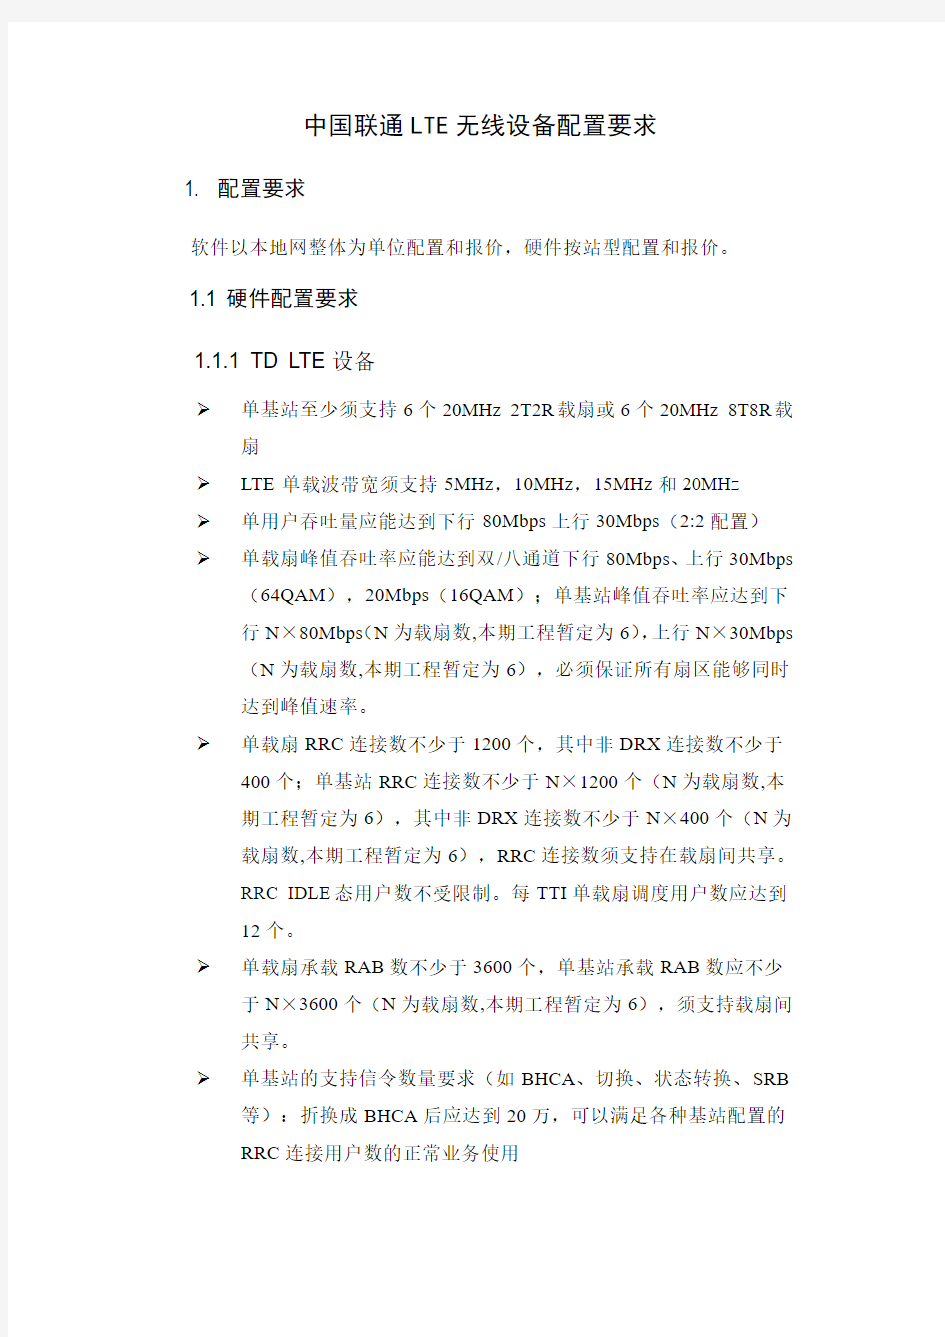 中国联通LTE无线设备配置要求